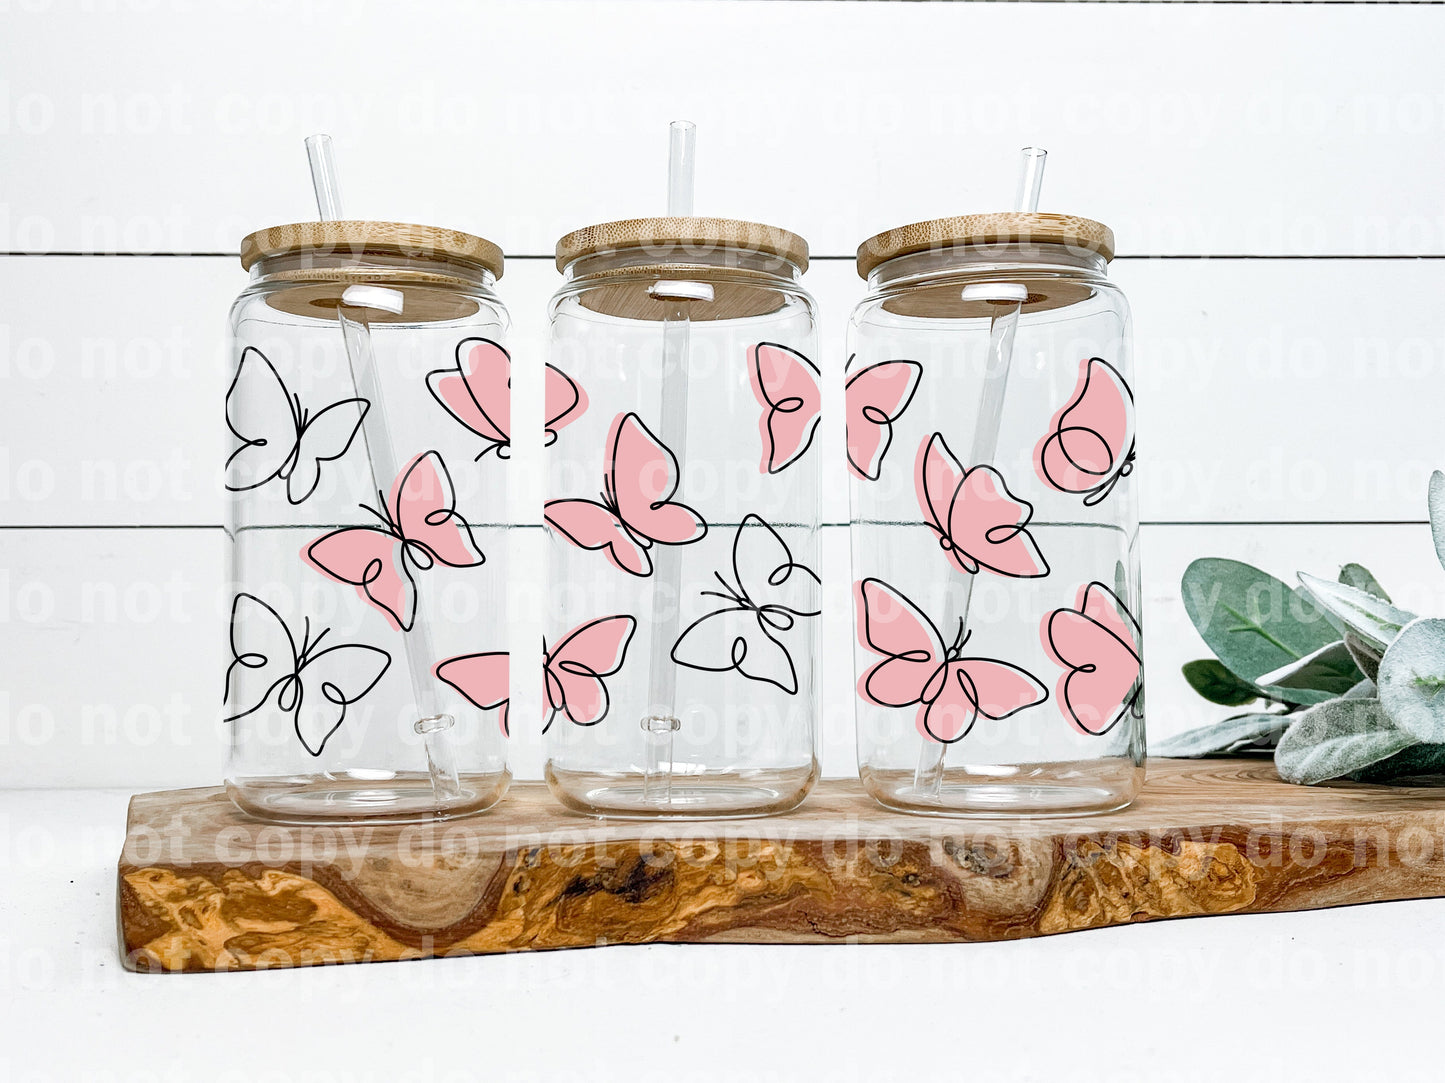 Envoltura de taza de 16 oz de mariposas rosas